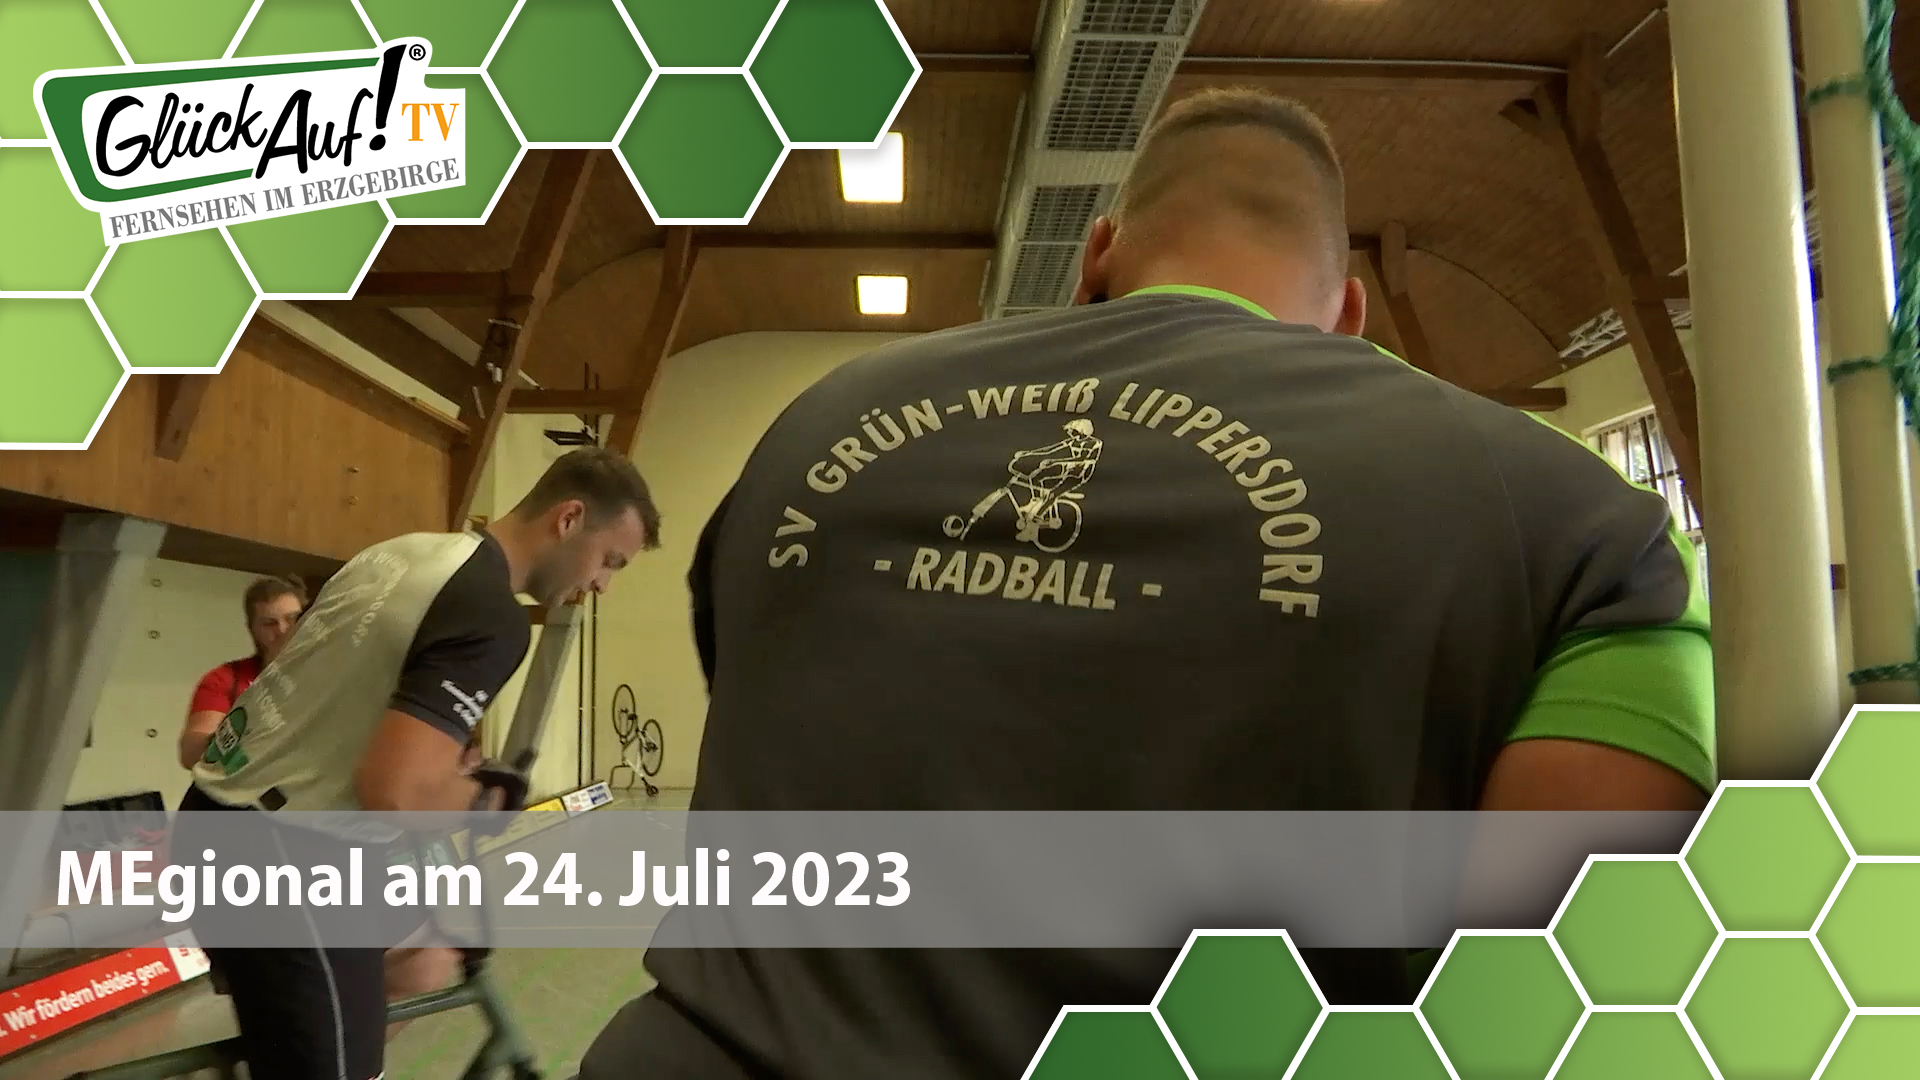 MEgional am 24. Juli 2023 mit dem Aufstieg der Lippersdorfer Radballer